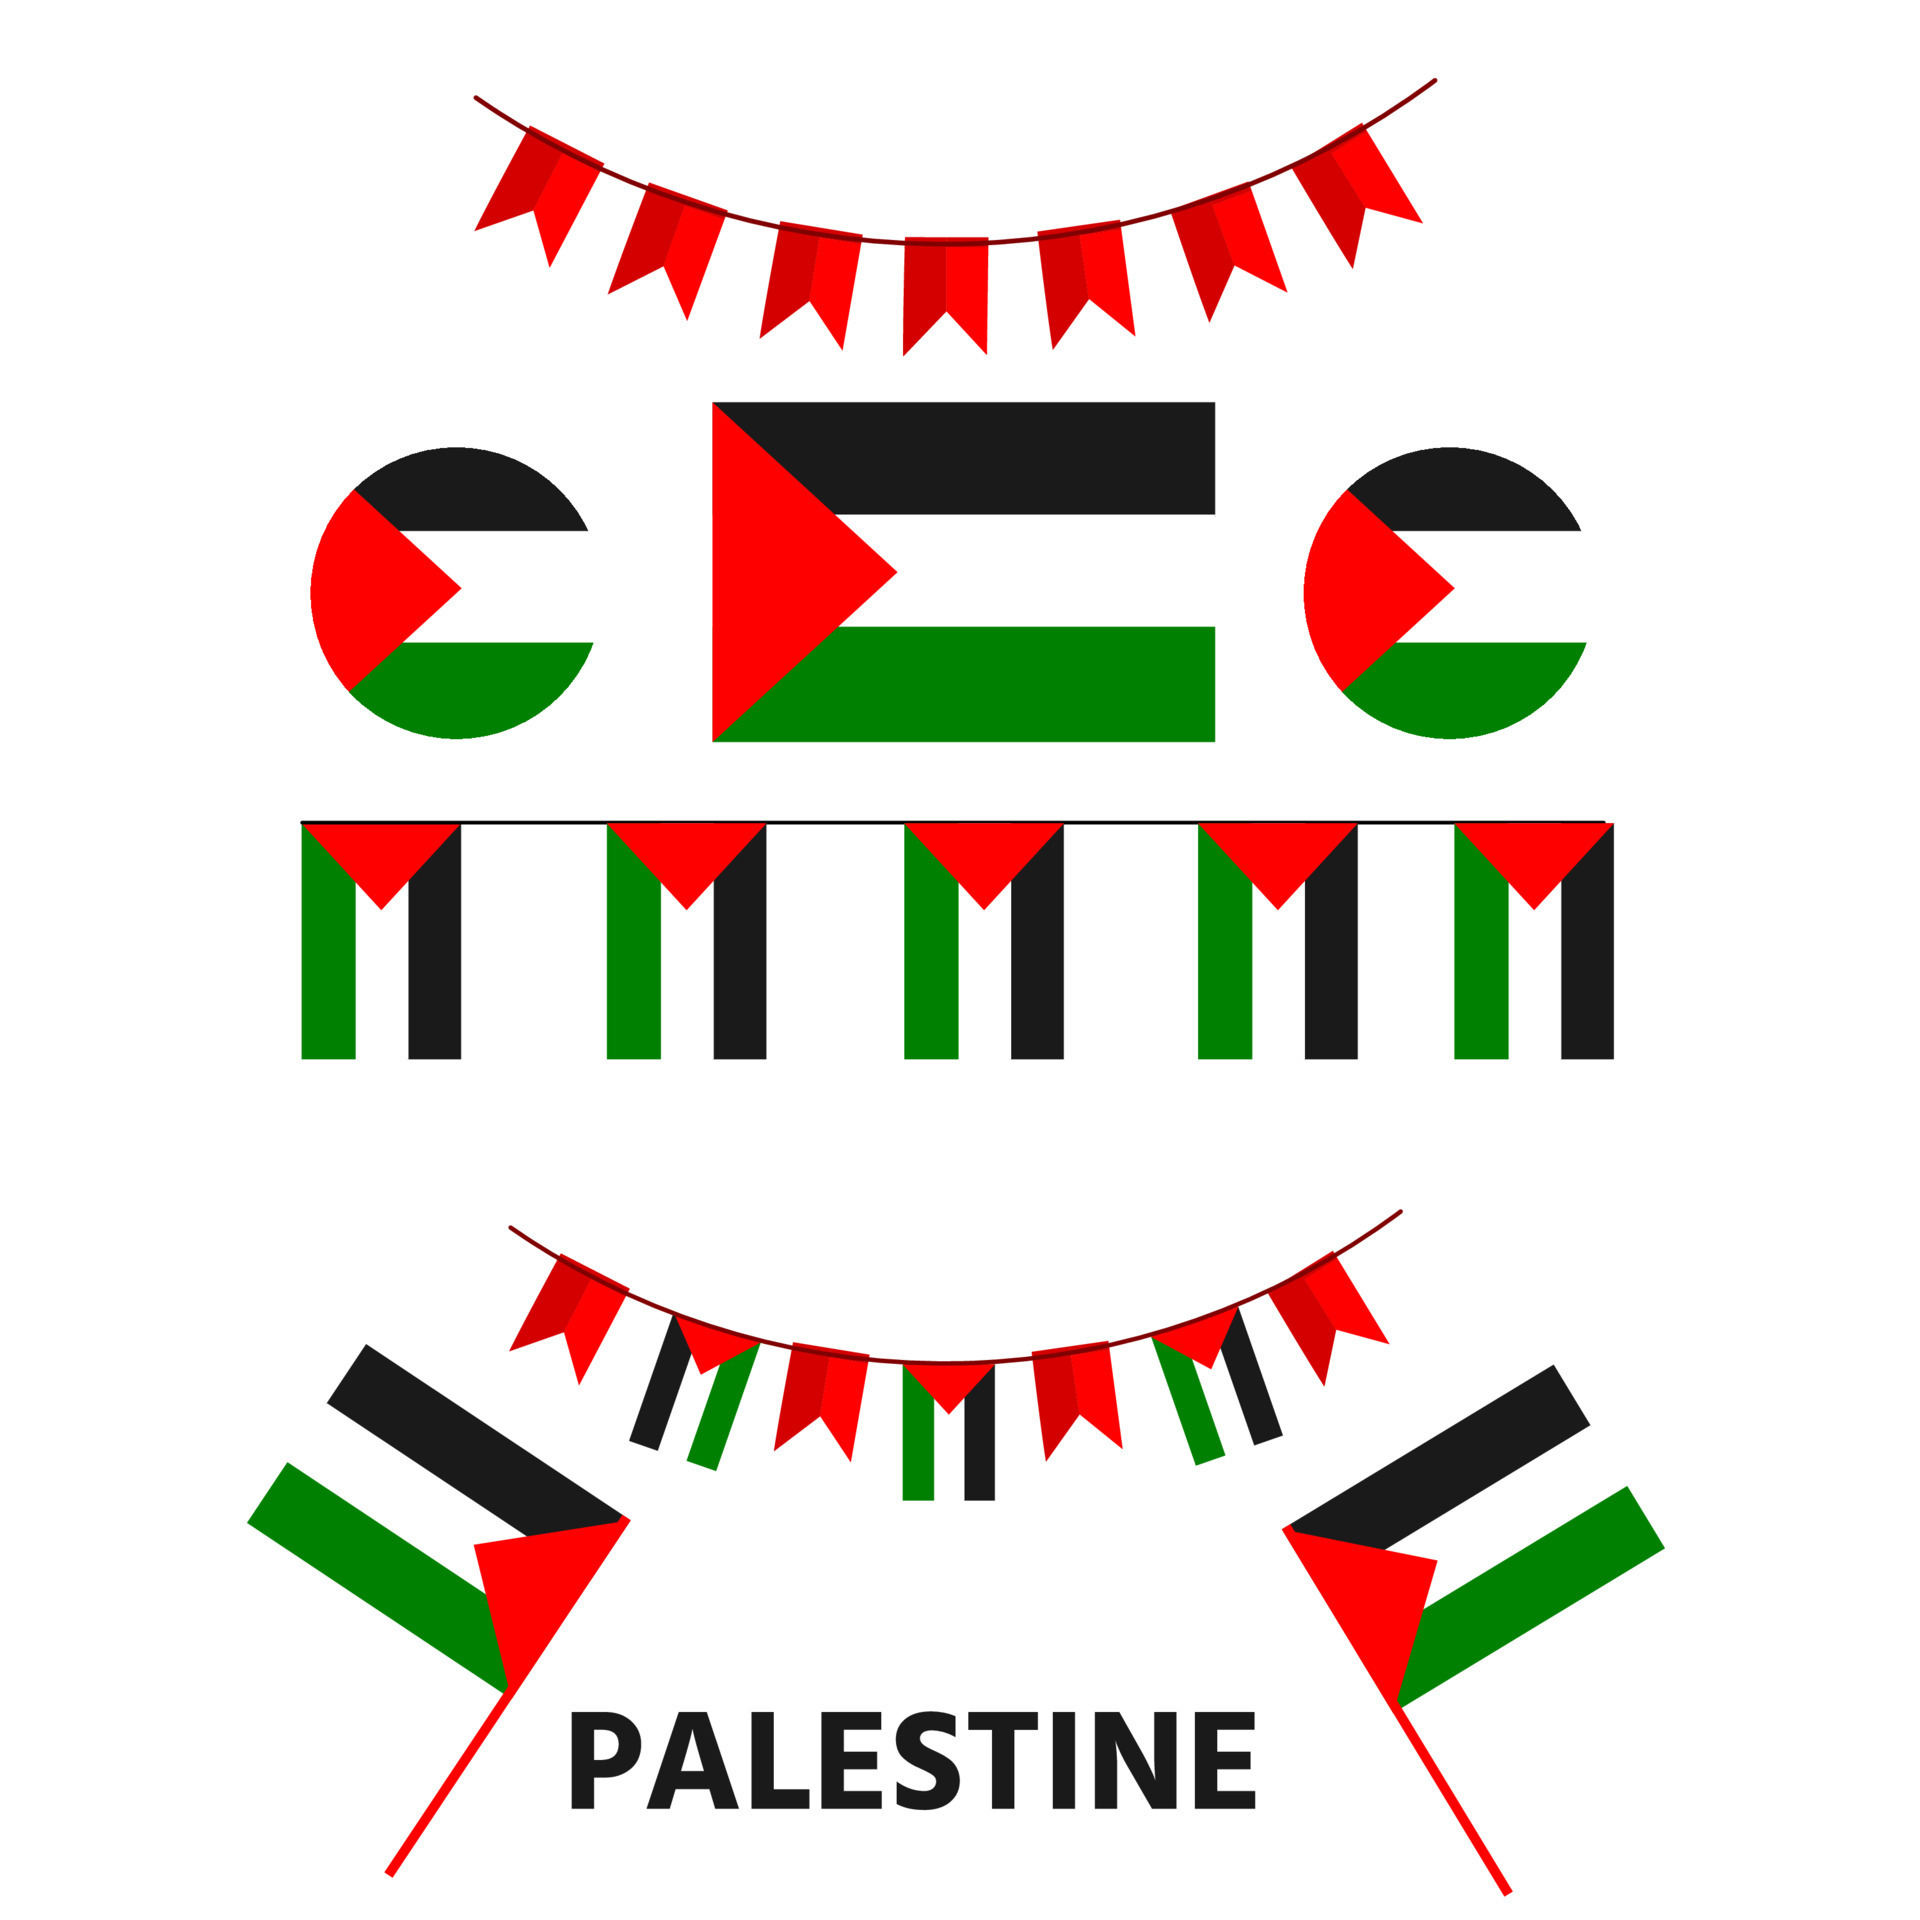 Le drapeau Palestinien, image et signification drapeau de la Palestine -  Country flags